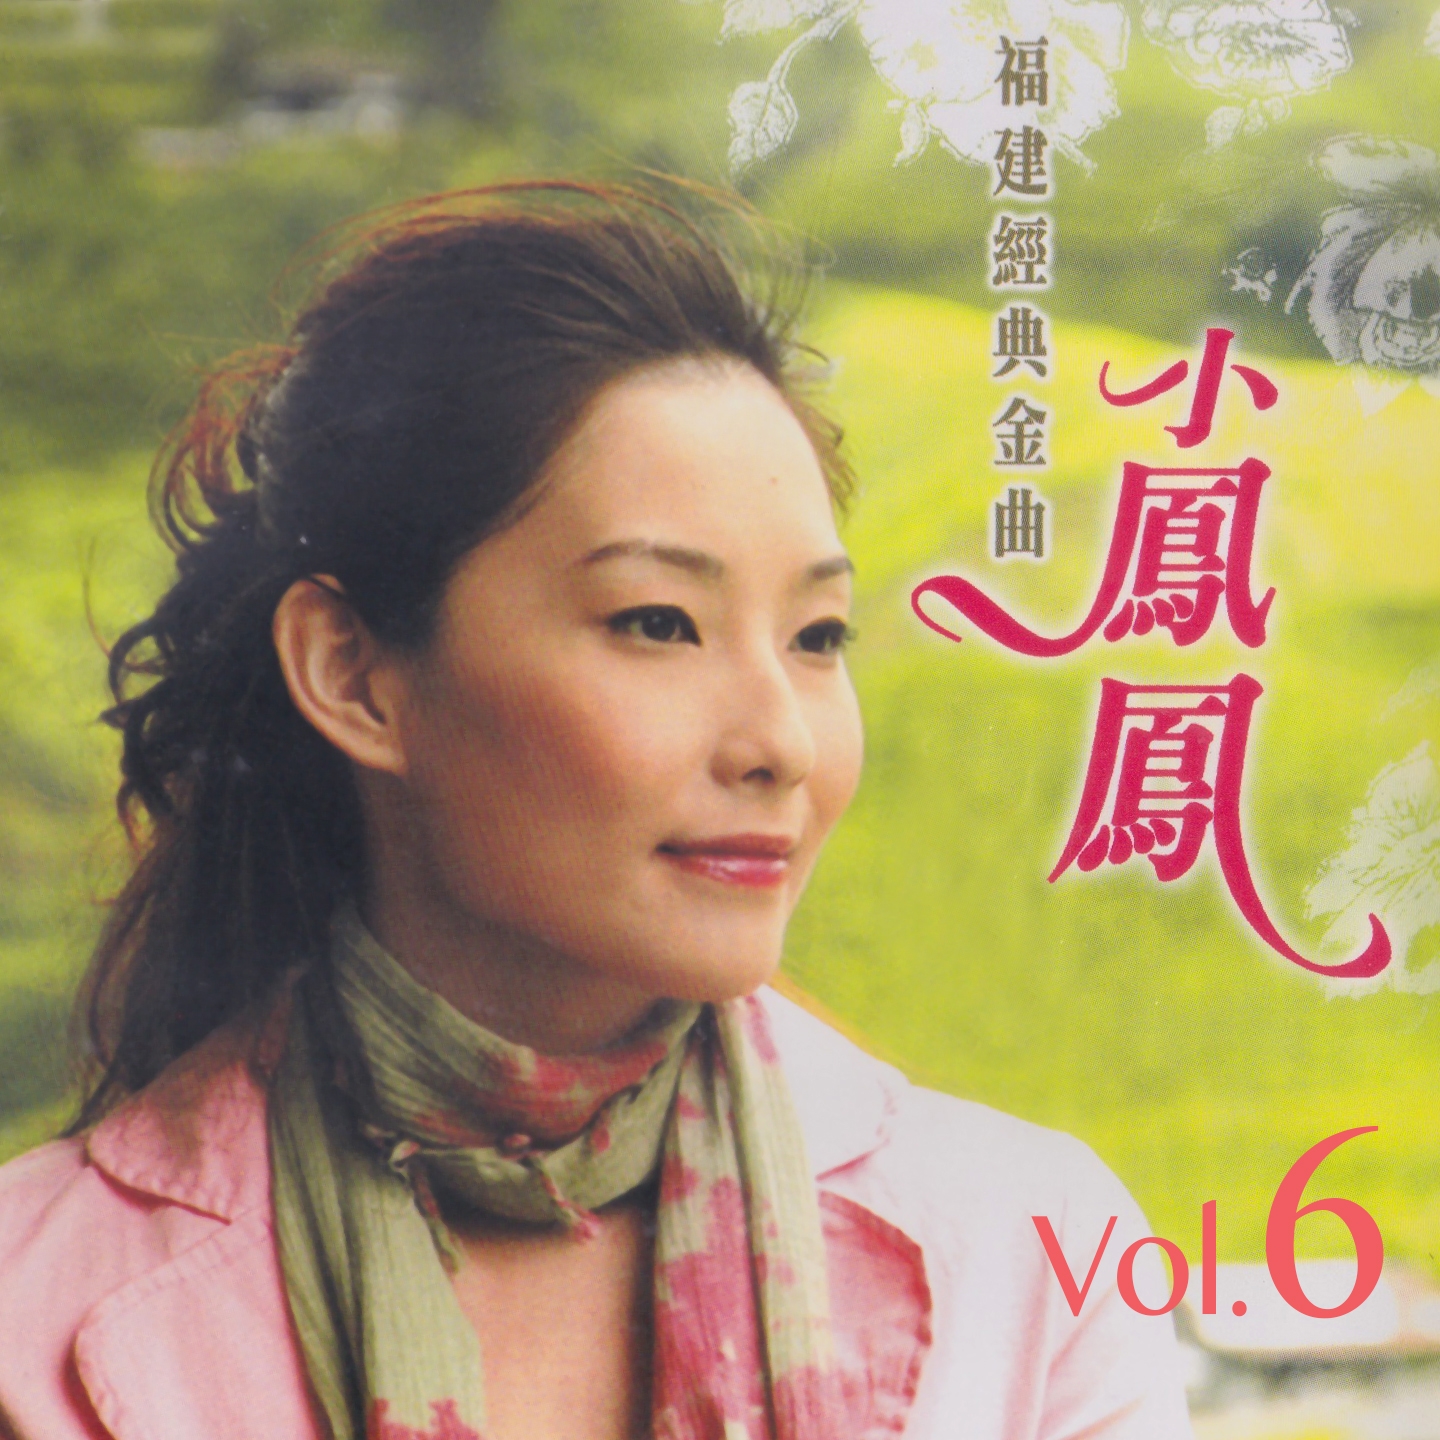 xiao feng feng fu jian jing dian jin qu, Vol. 6